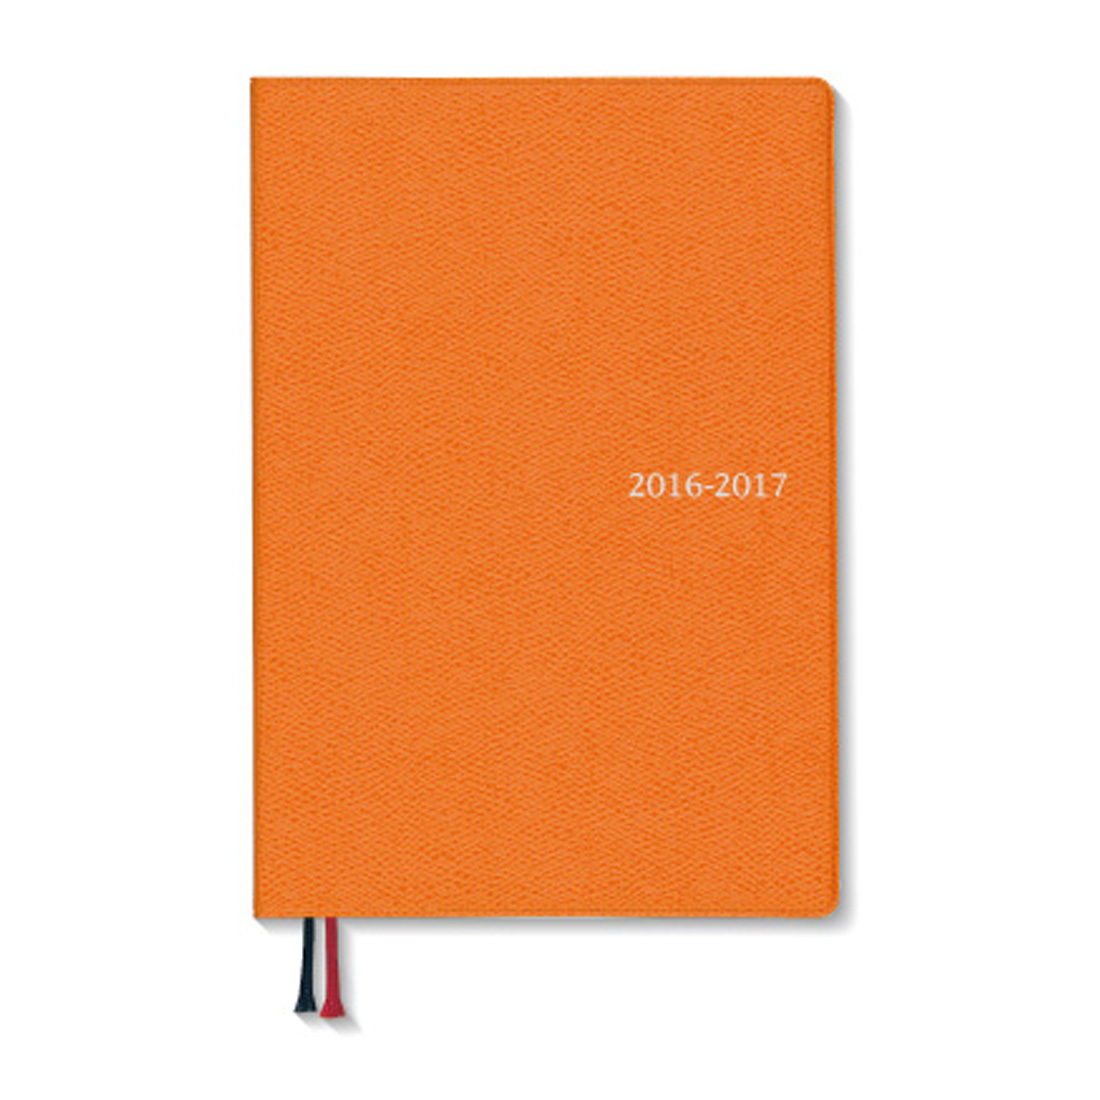 16 17 4月始まり Appoint デスク 1週間バーチカル B6 オレンジ E1165 年版手帳 手帳 ダイアリー のダイゴーオンラインショップ